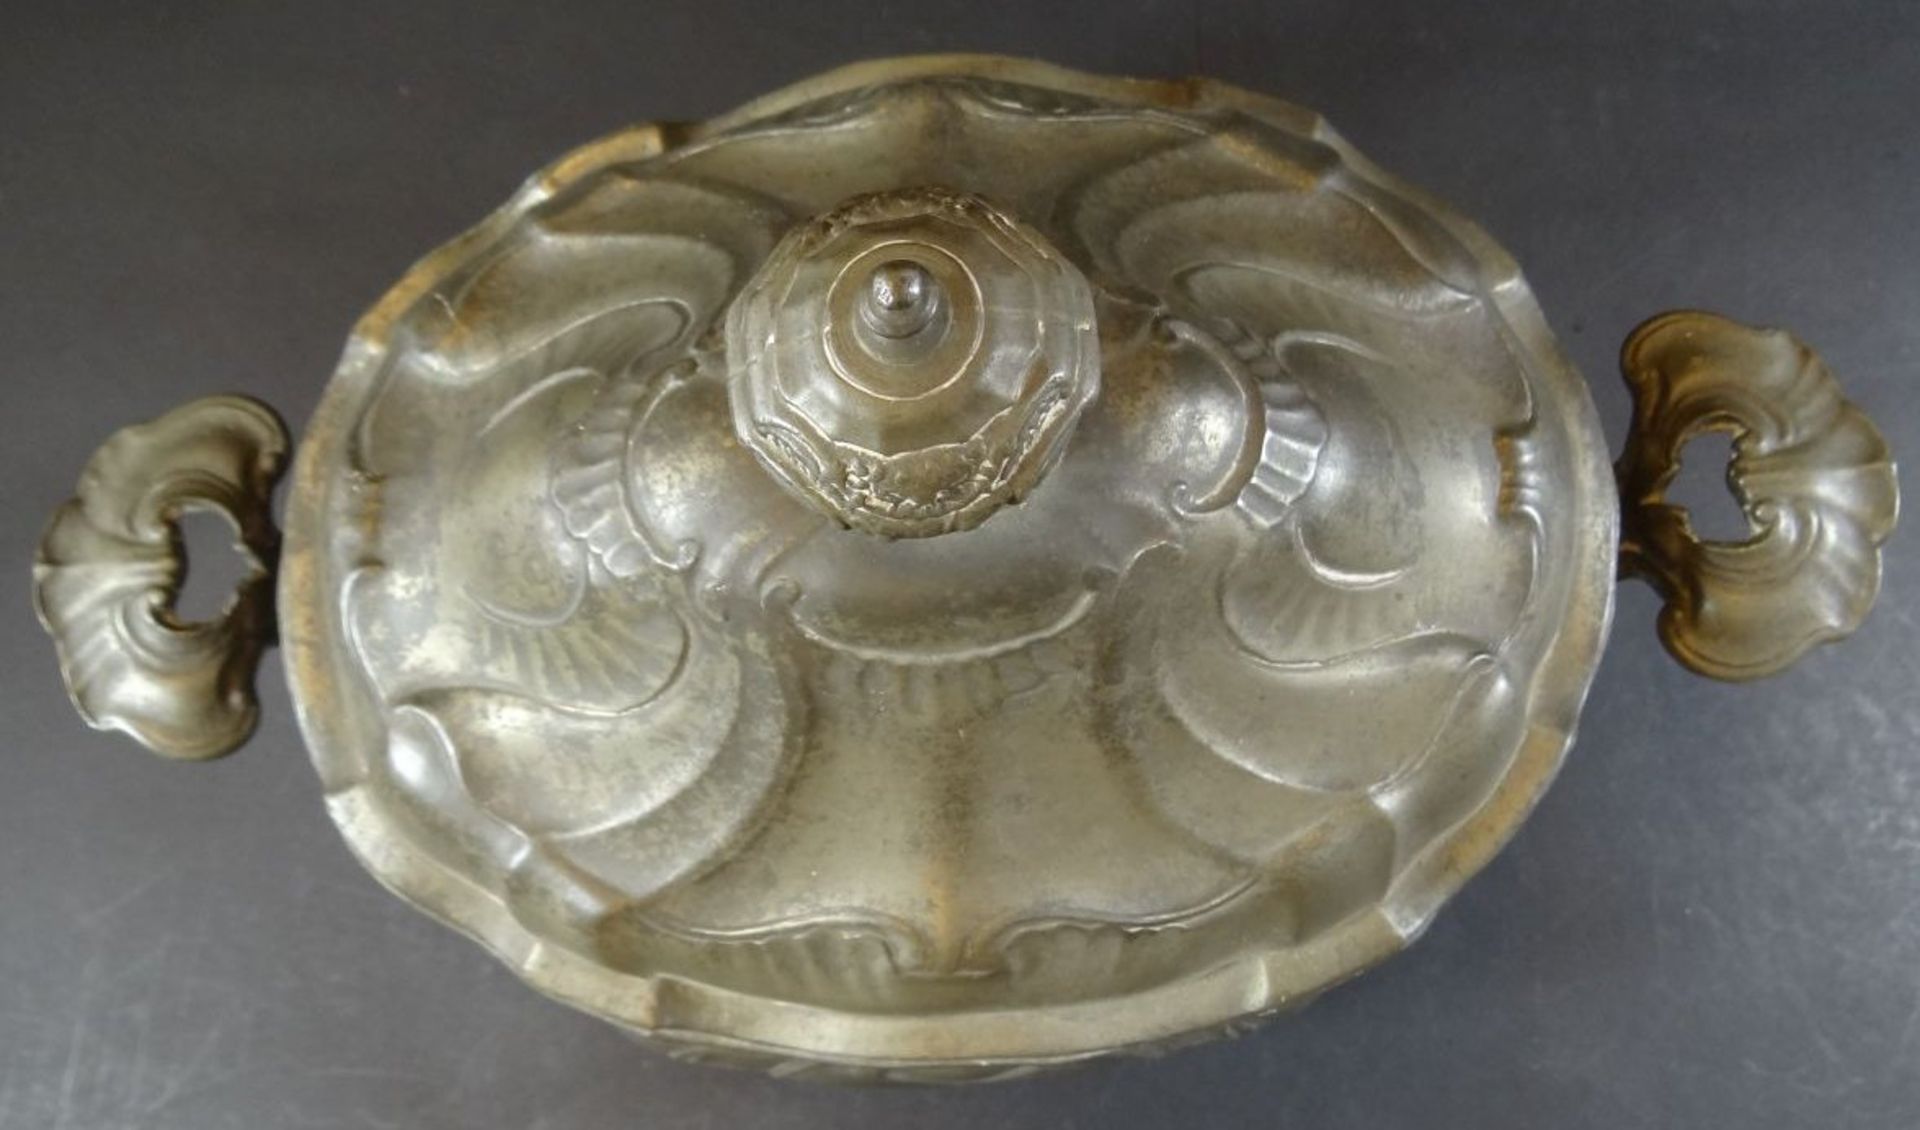 grosse ovale Zinn-Prunkterinne, Engelmarke um 1850, 28 cm, 26x21 cm, Altersspuren - Bild 3 aus 11